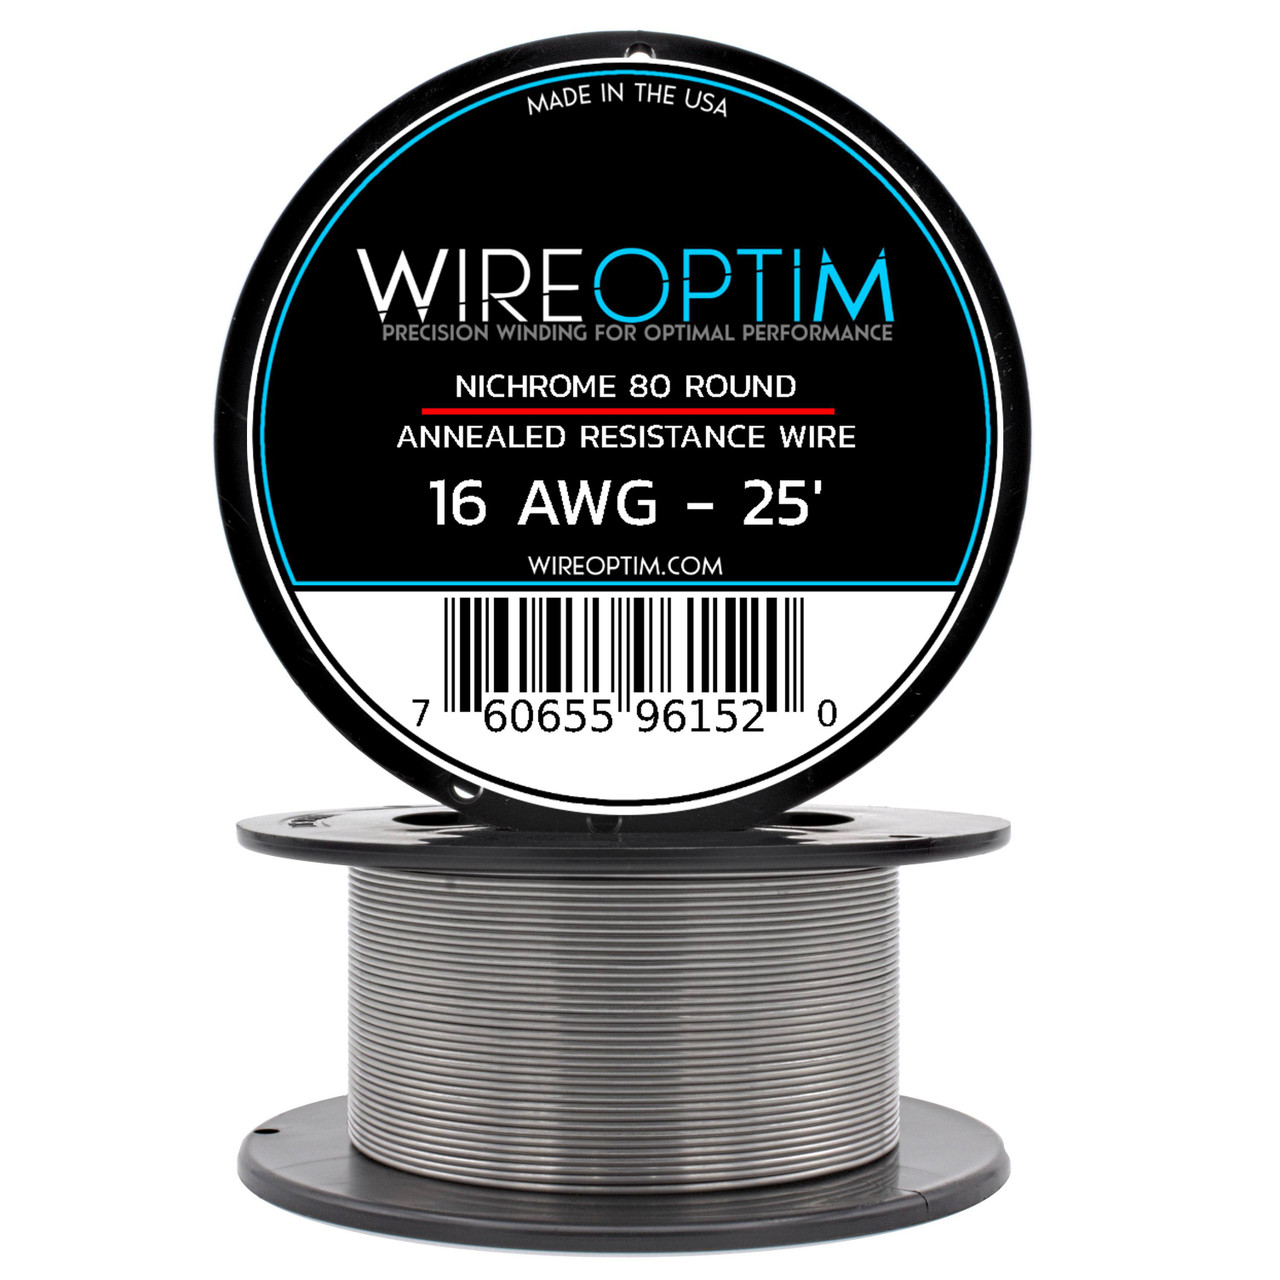 Nichrome Series 80 Resistance Wire (Even Gauges) - WIREOPTIM